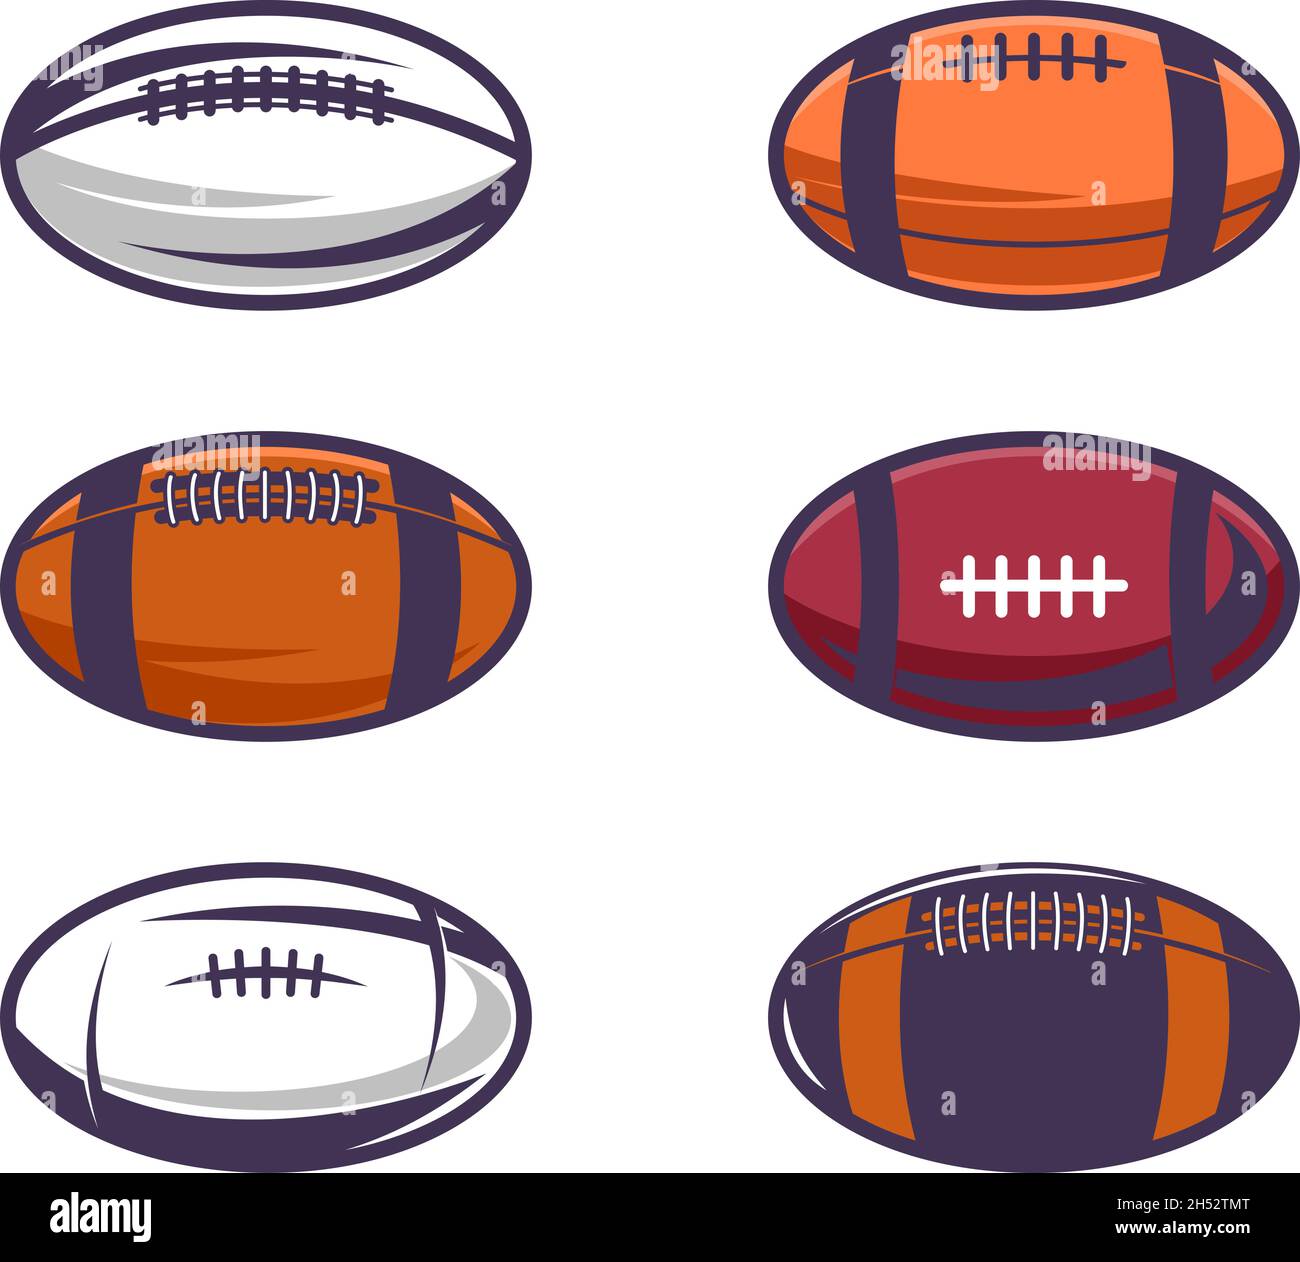 Set of Illustrations of rugby balls in vintage monochrome style. Design element for logo, label, sign, emblem, poster. Vector illustration Stock Vector